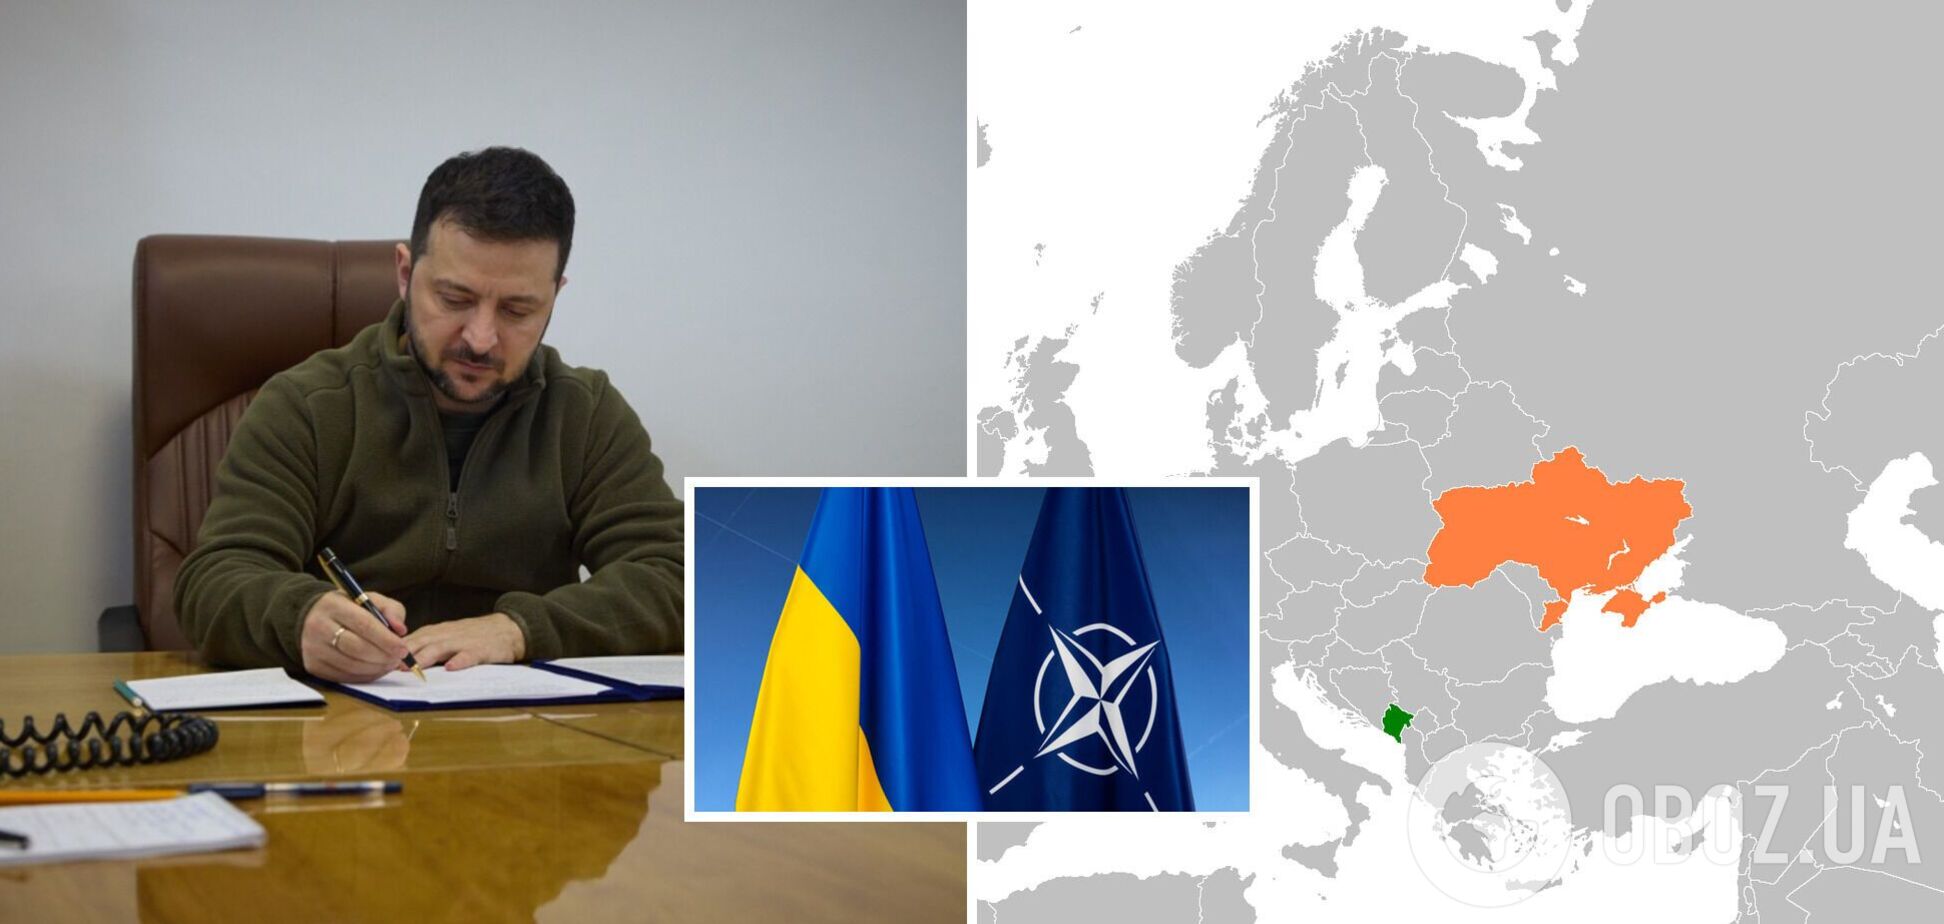 Черногория третьей подписала декларацию о поддержке вступления Украины в НАТО: детали переговоров Зеленского и Абазовича